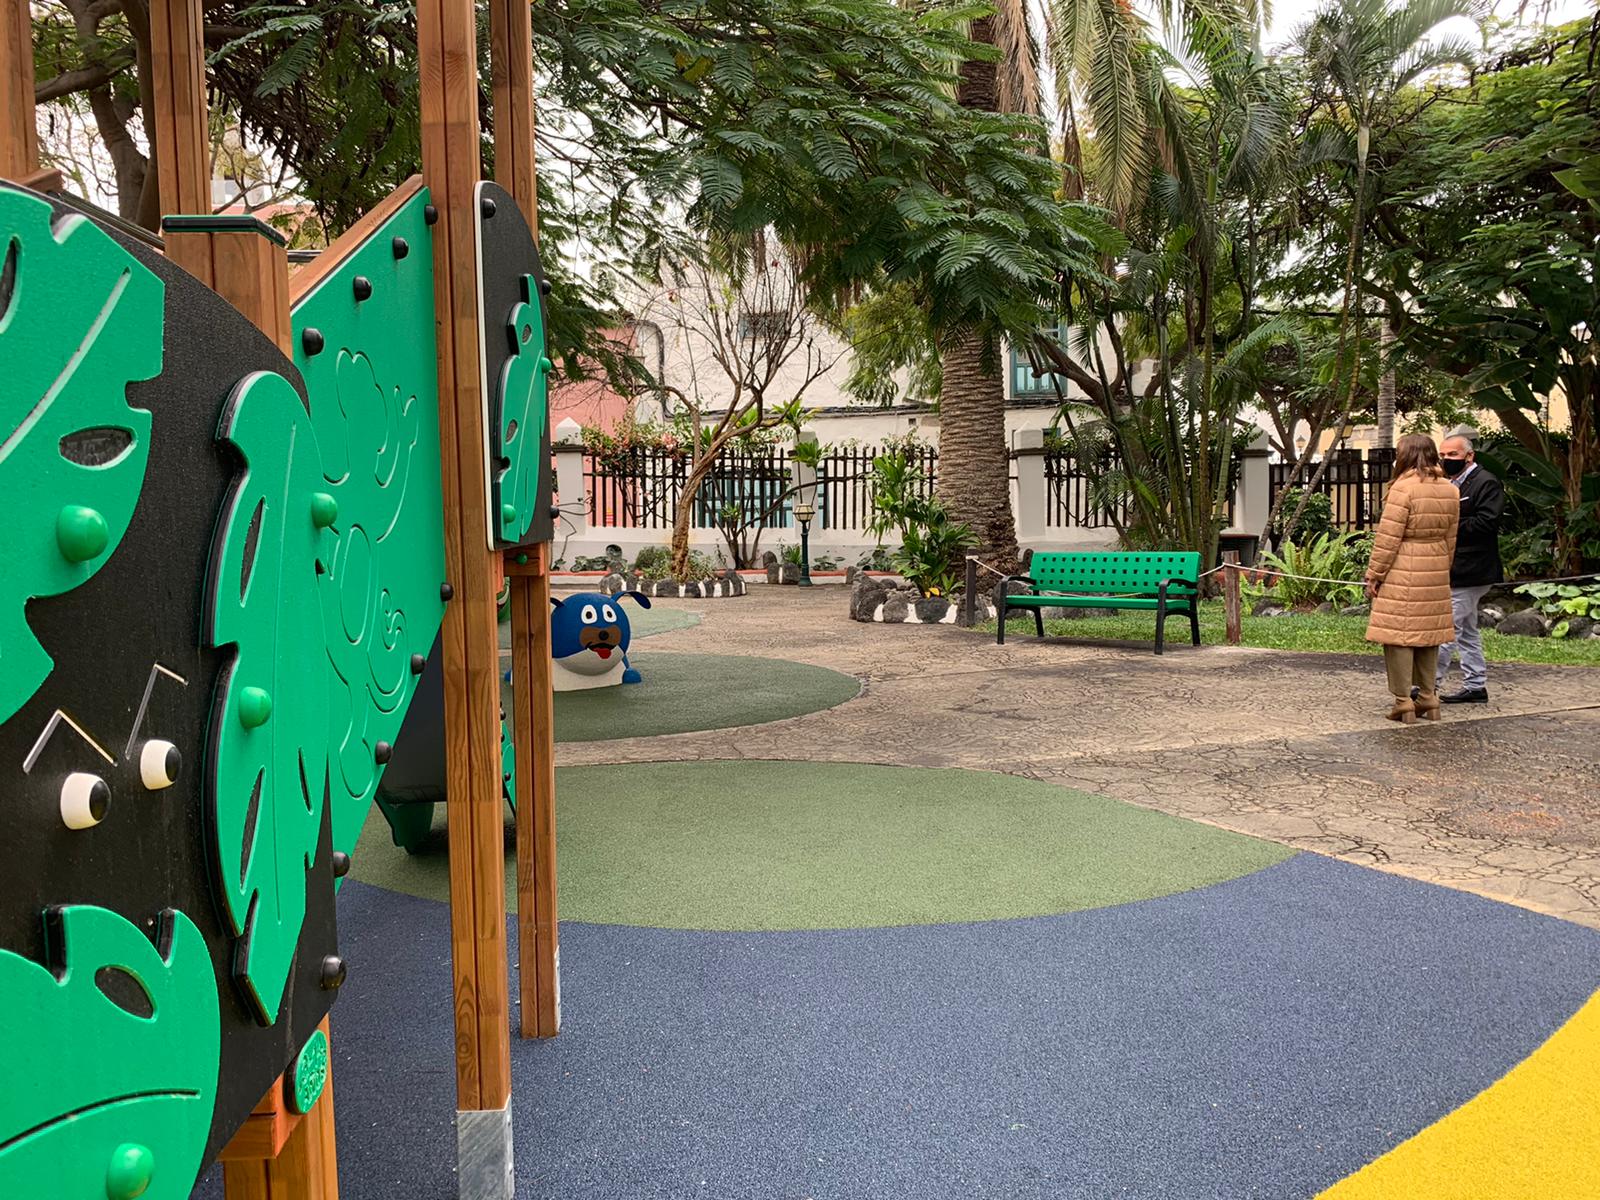 El parque infantil de Santa Rosalía en Telde adaptado para personas con movilidad reducida / CanariasNoticias.es